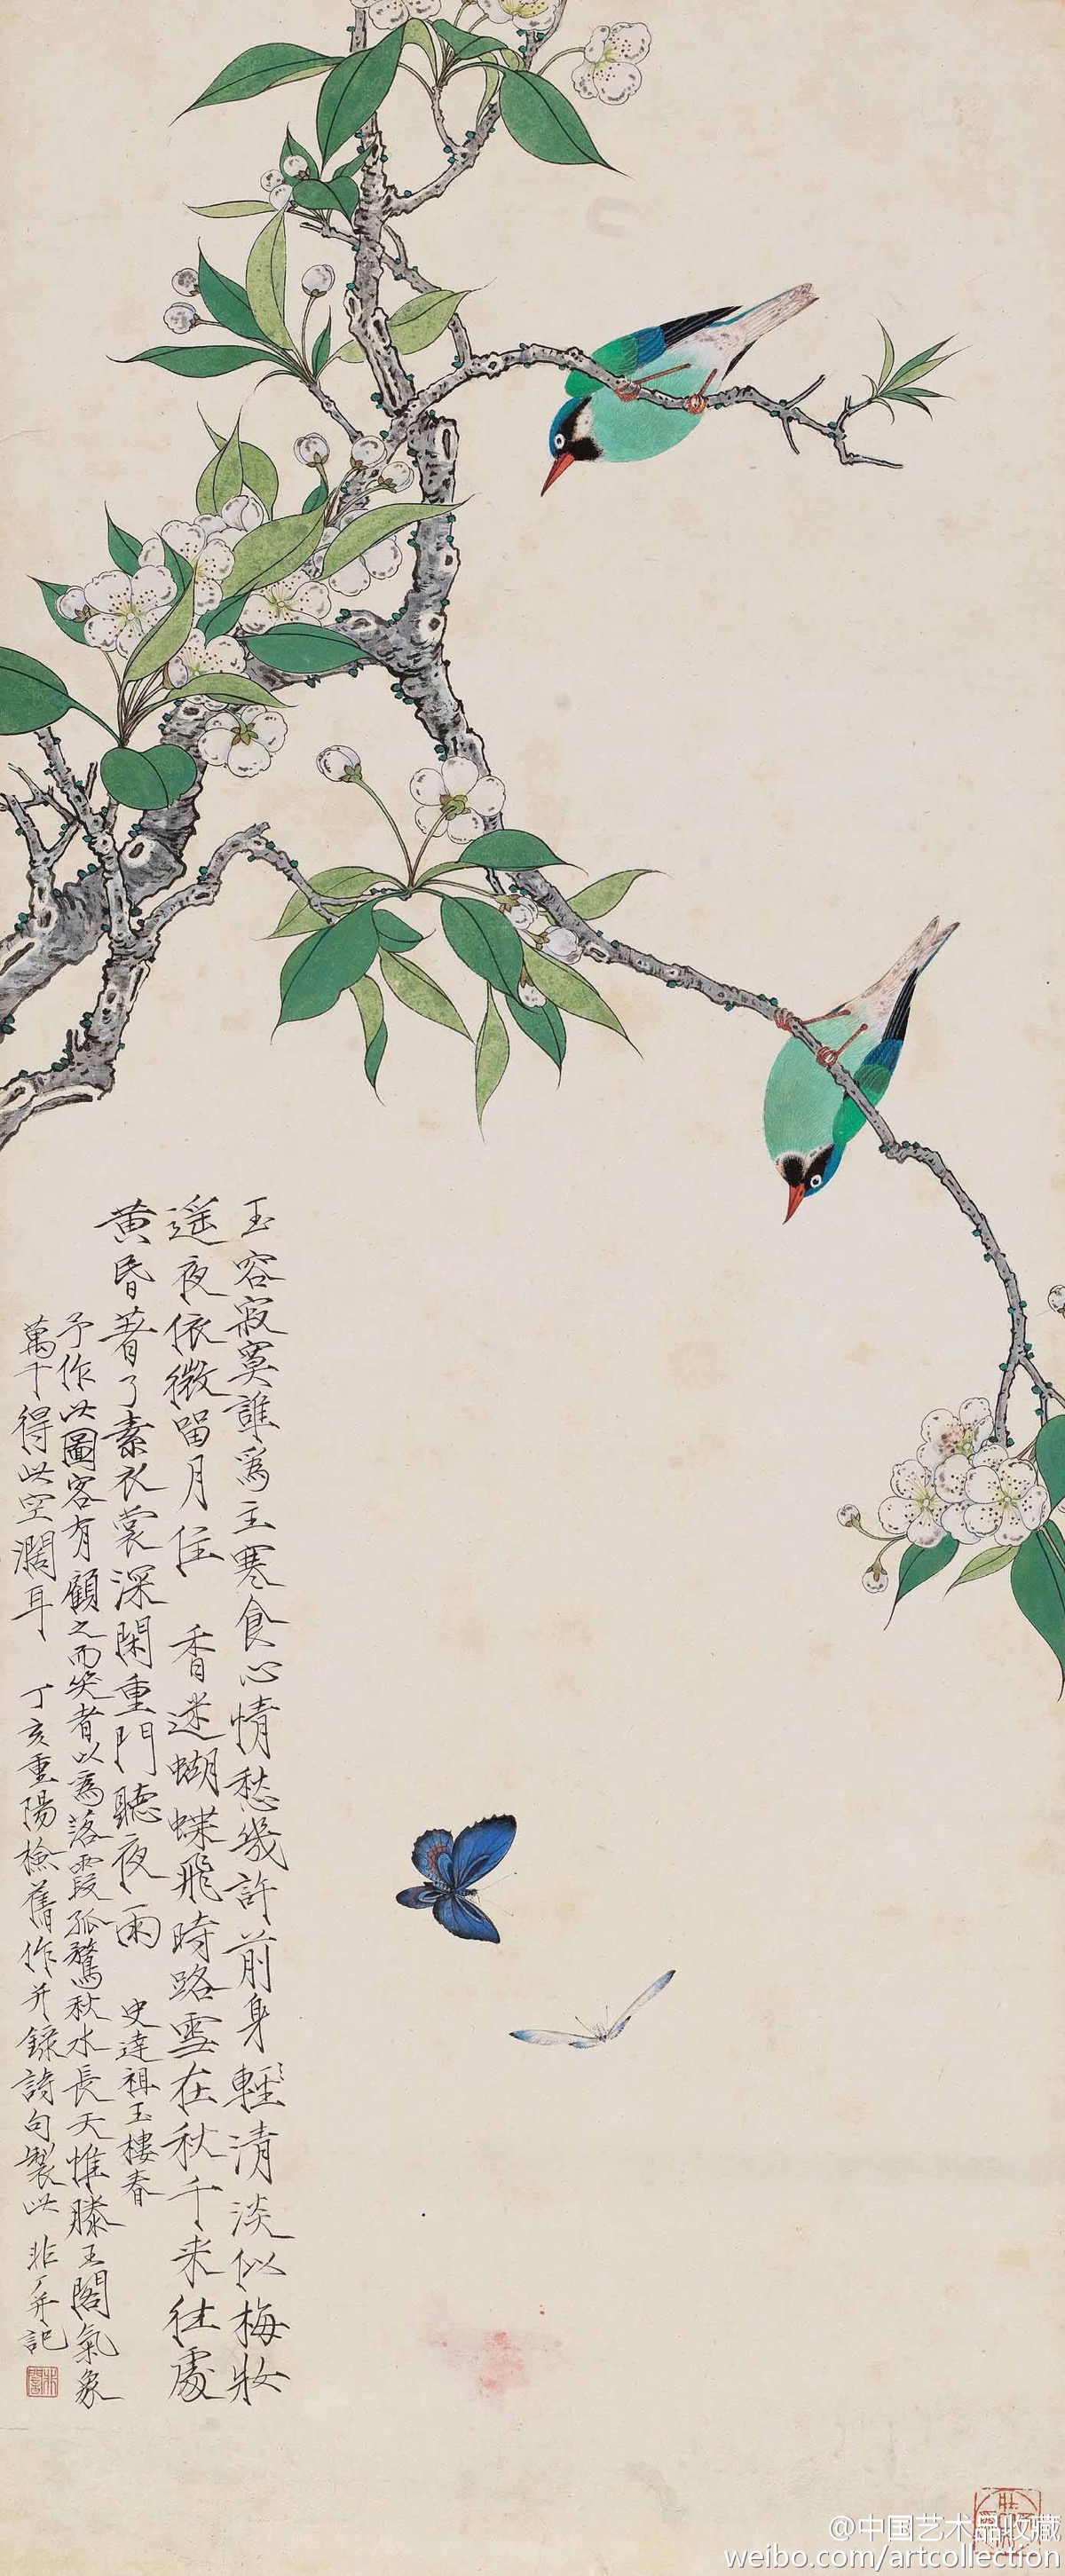 【 于非暗 《花鸟图》 】于非暗是20世纪北方工笔花鸟画的杰出代表,其